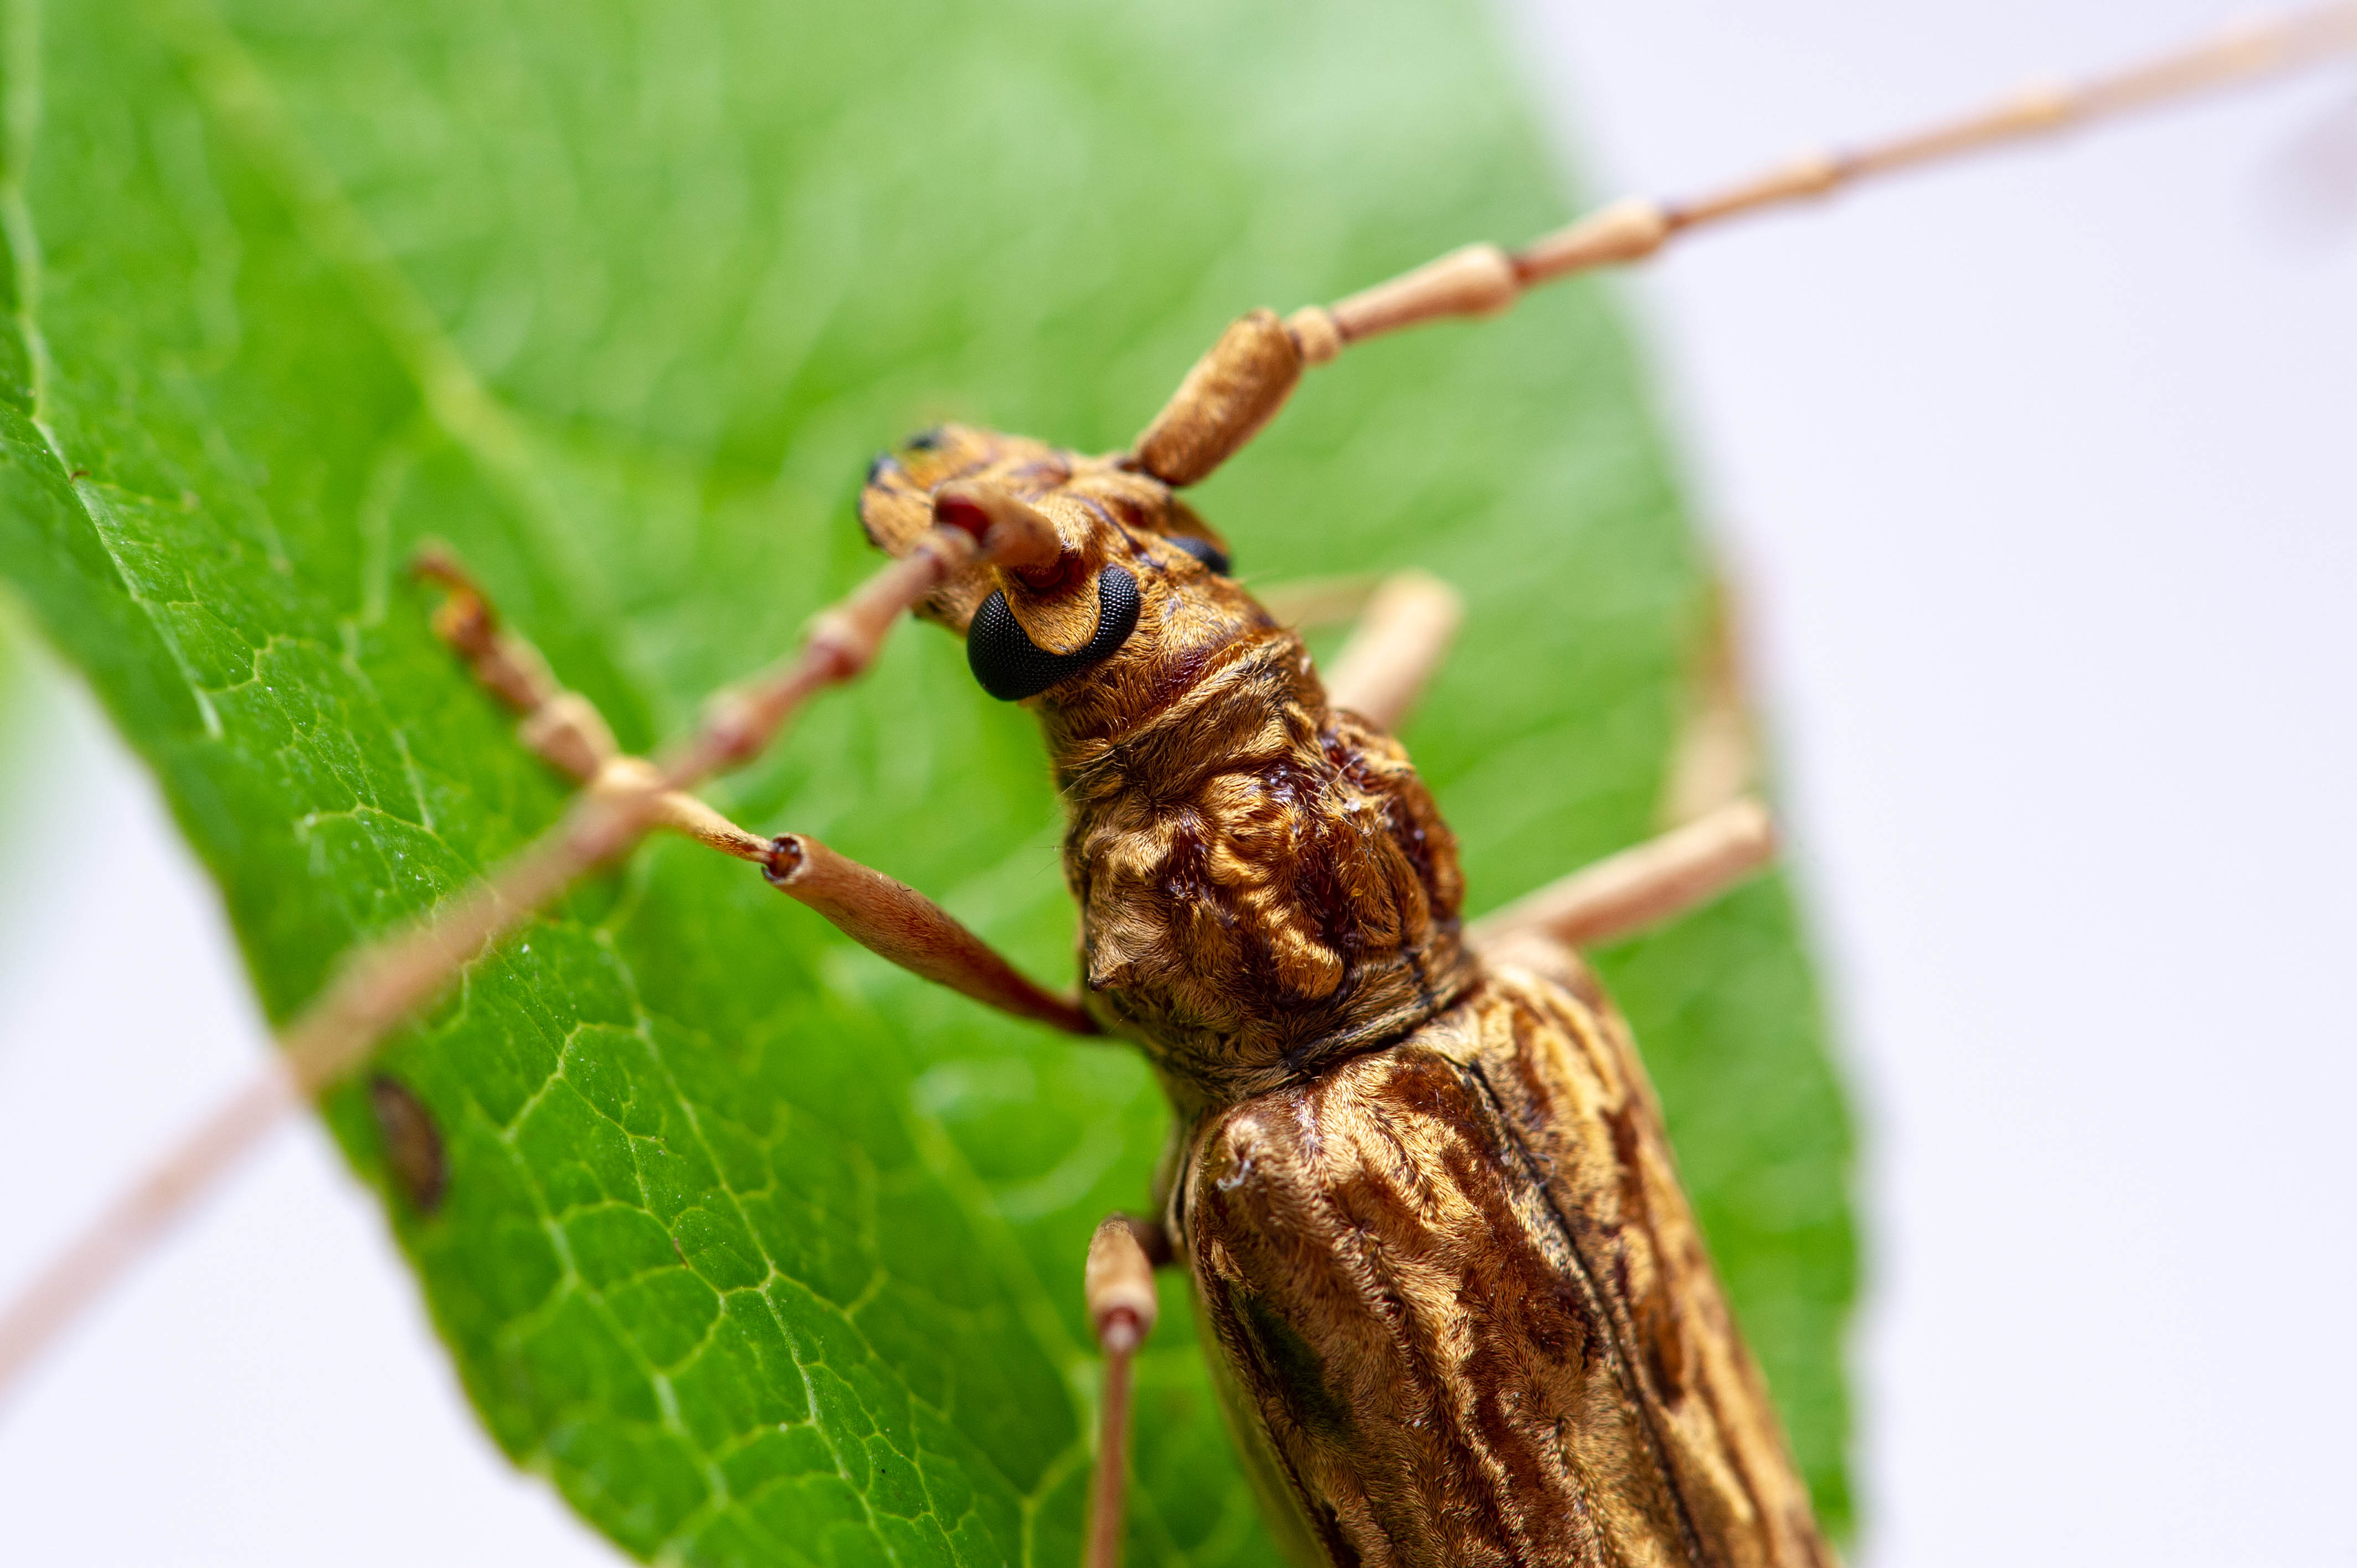 ゴマダラカミキリの生態や食性の秘密 虫の写真と生態なら昆虫写真図鑑 ムシミル